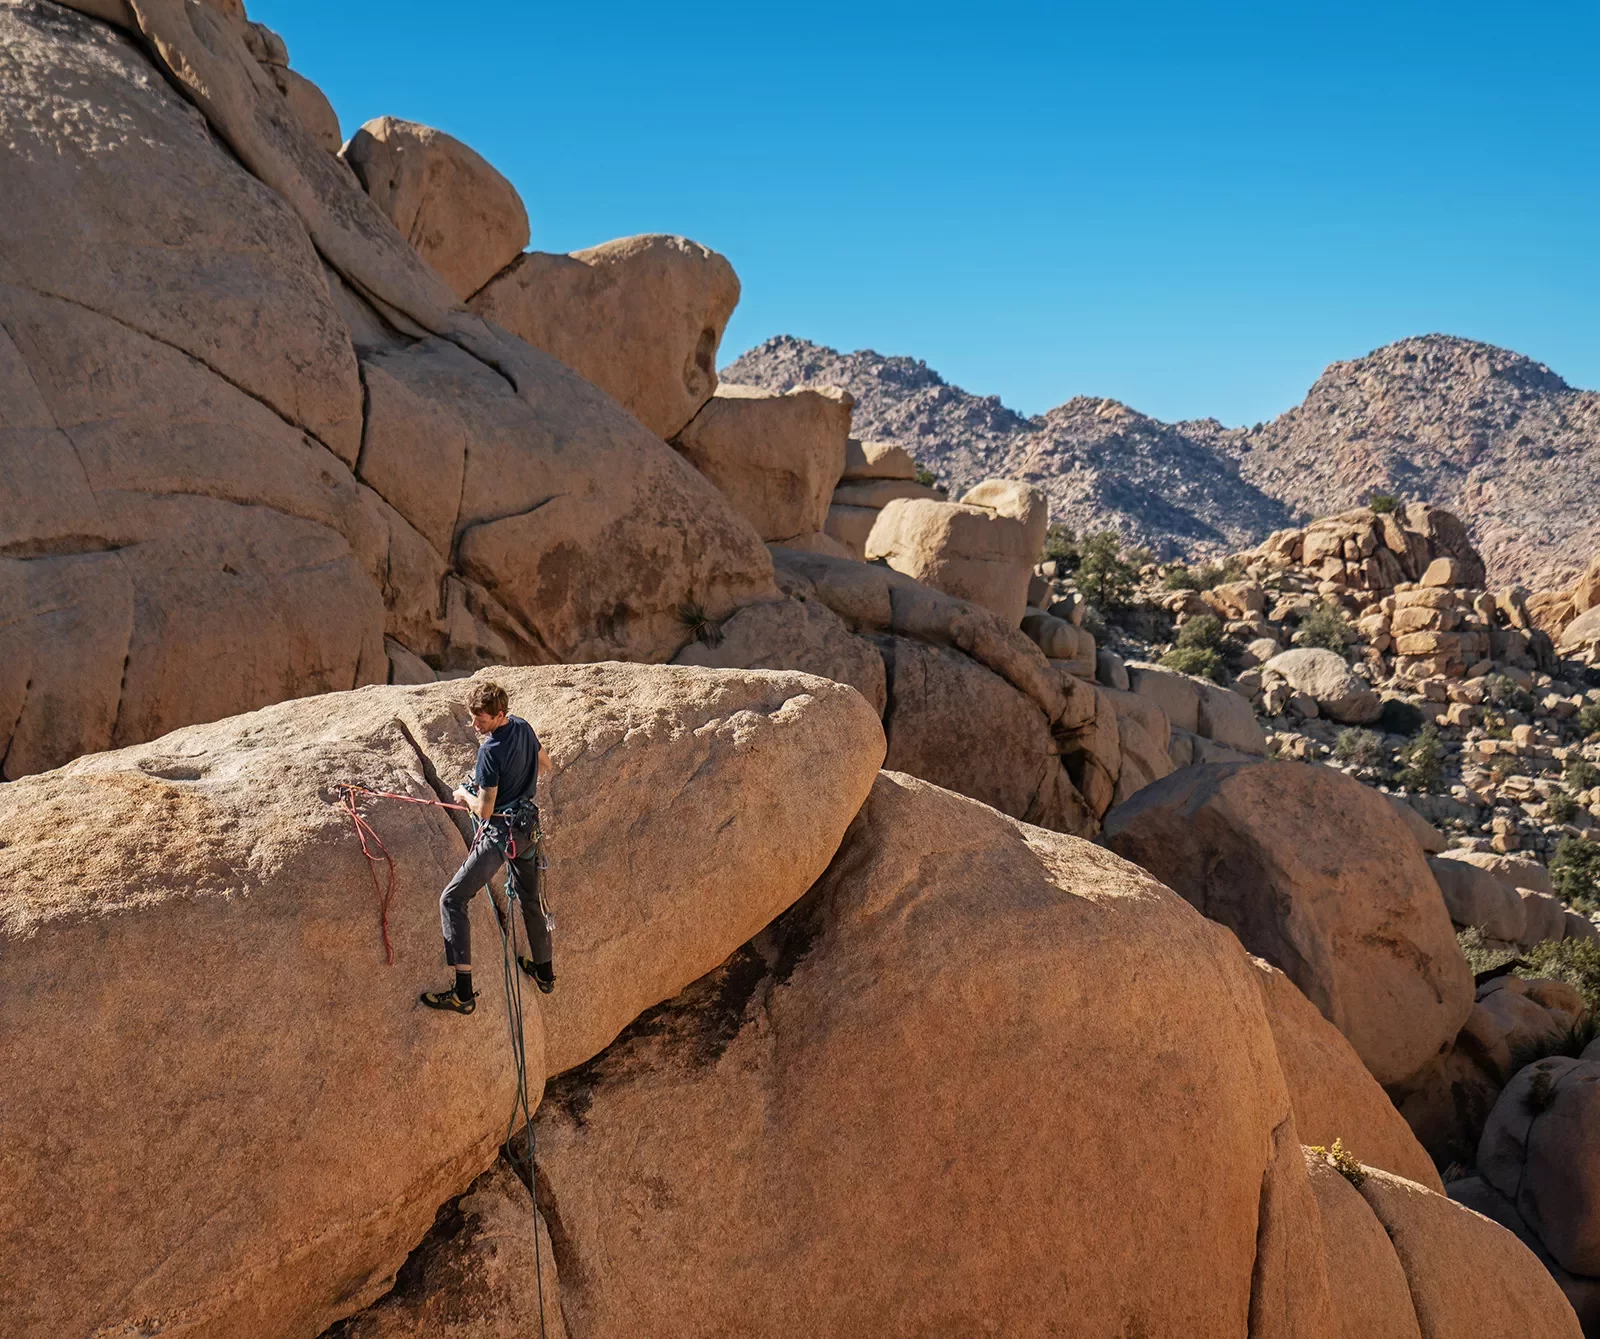 Guest rock climbing with desert vista behind them.